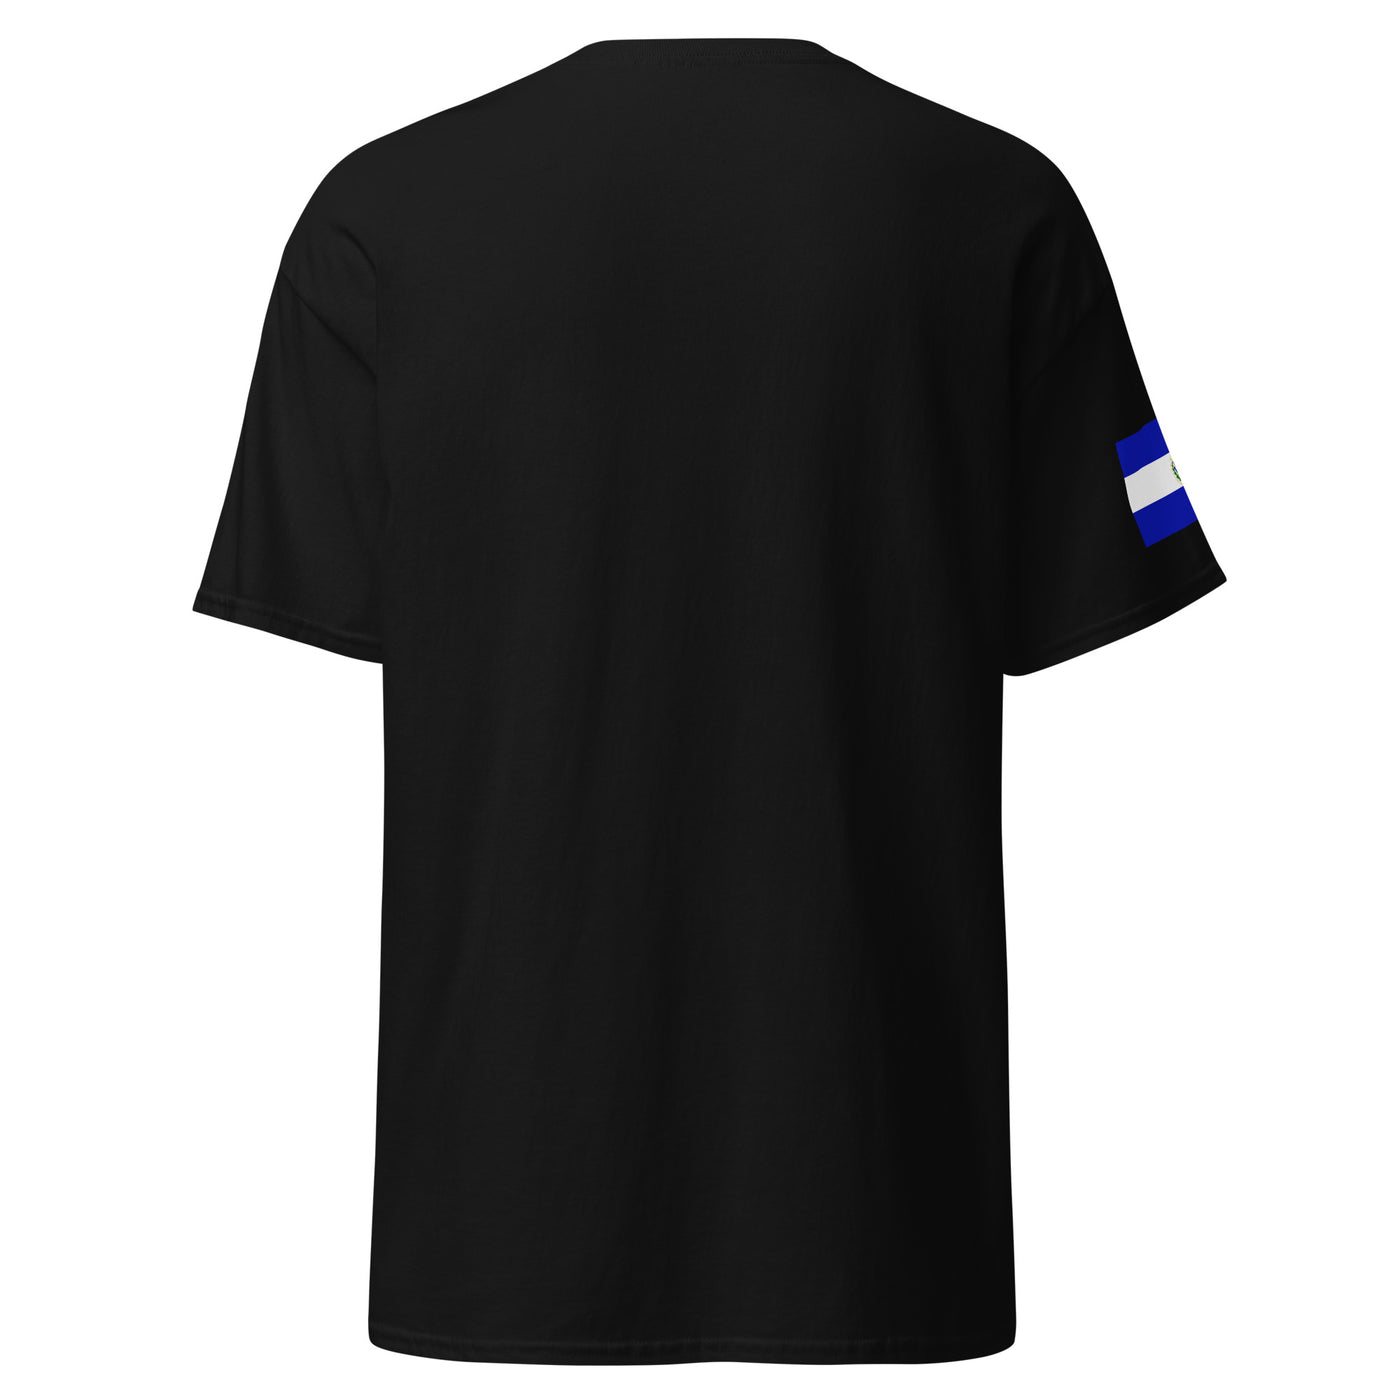 Marquis Gallegos Black Shirt (Salvadorian Flag)